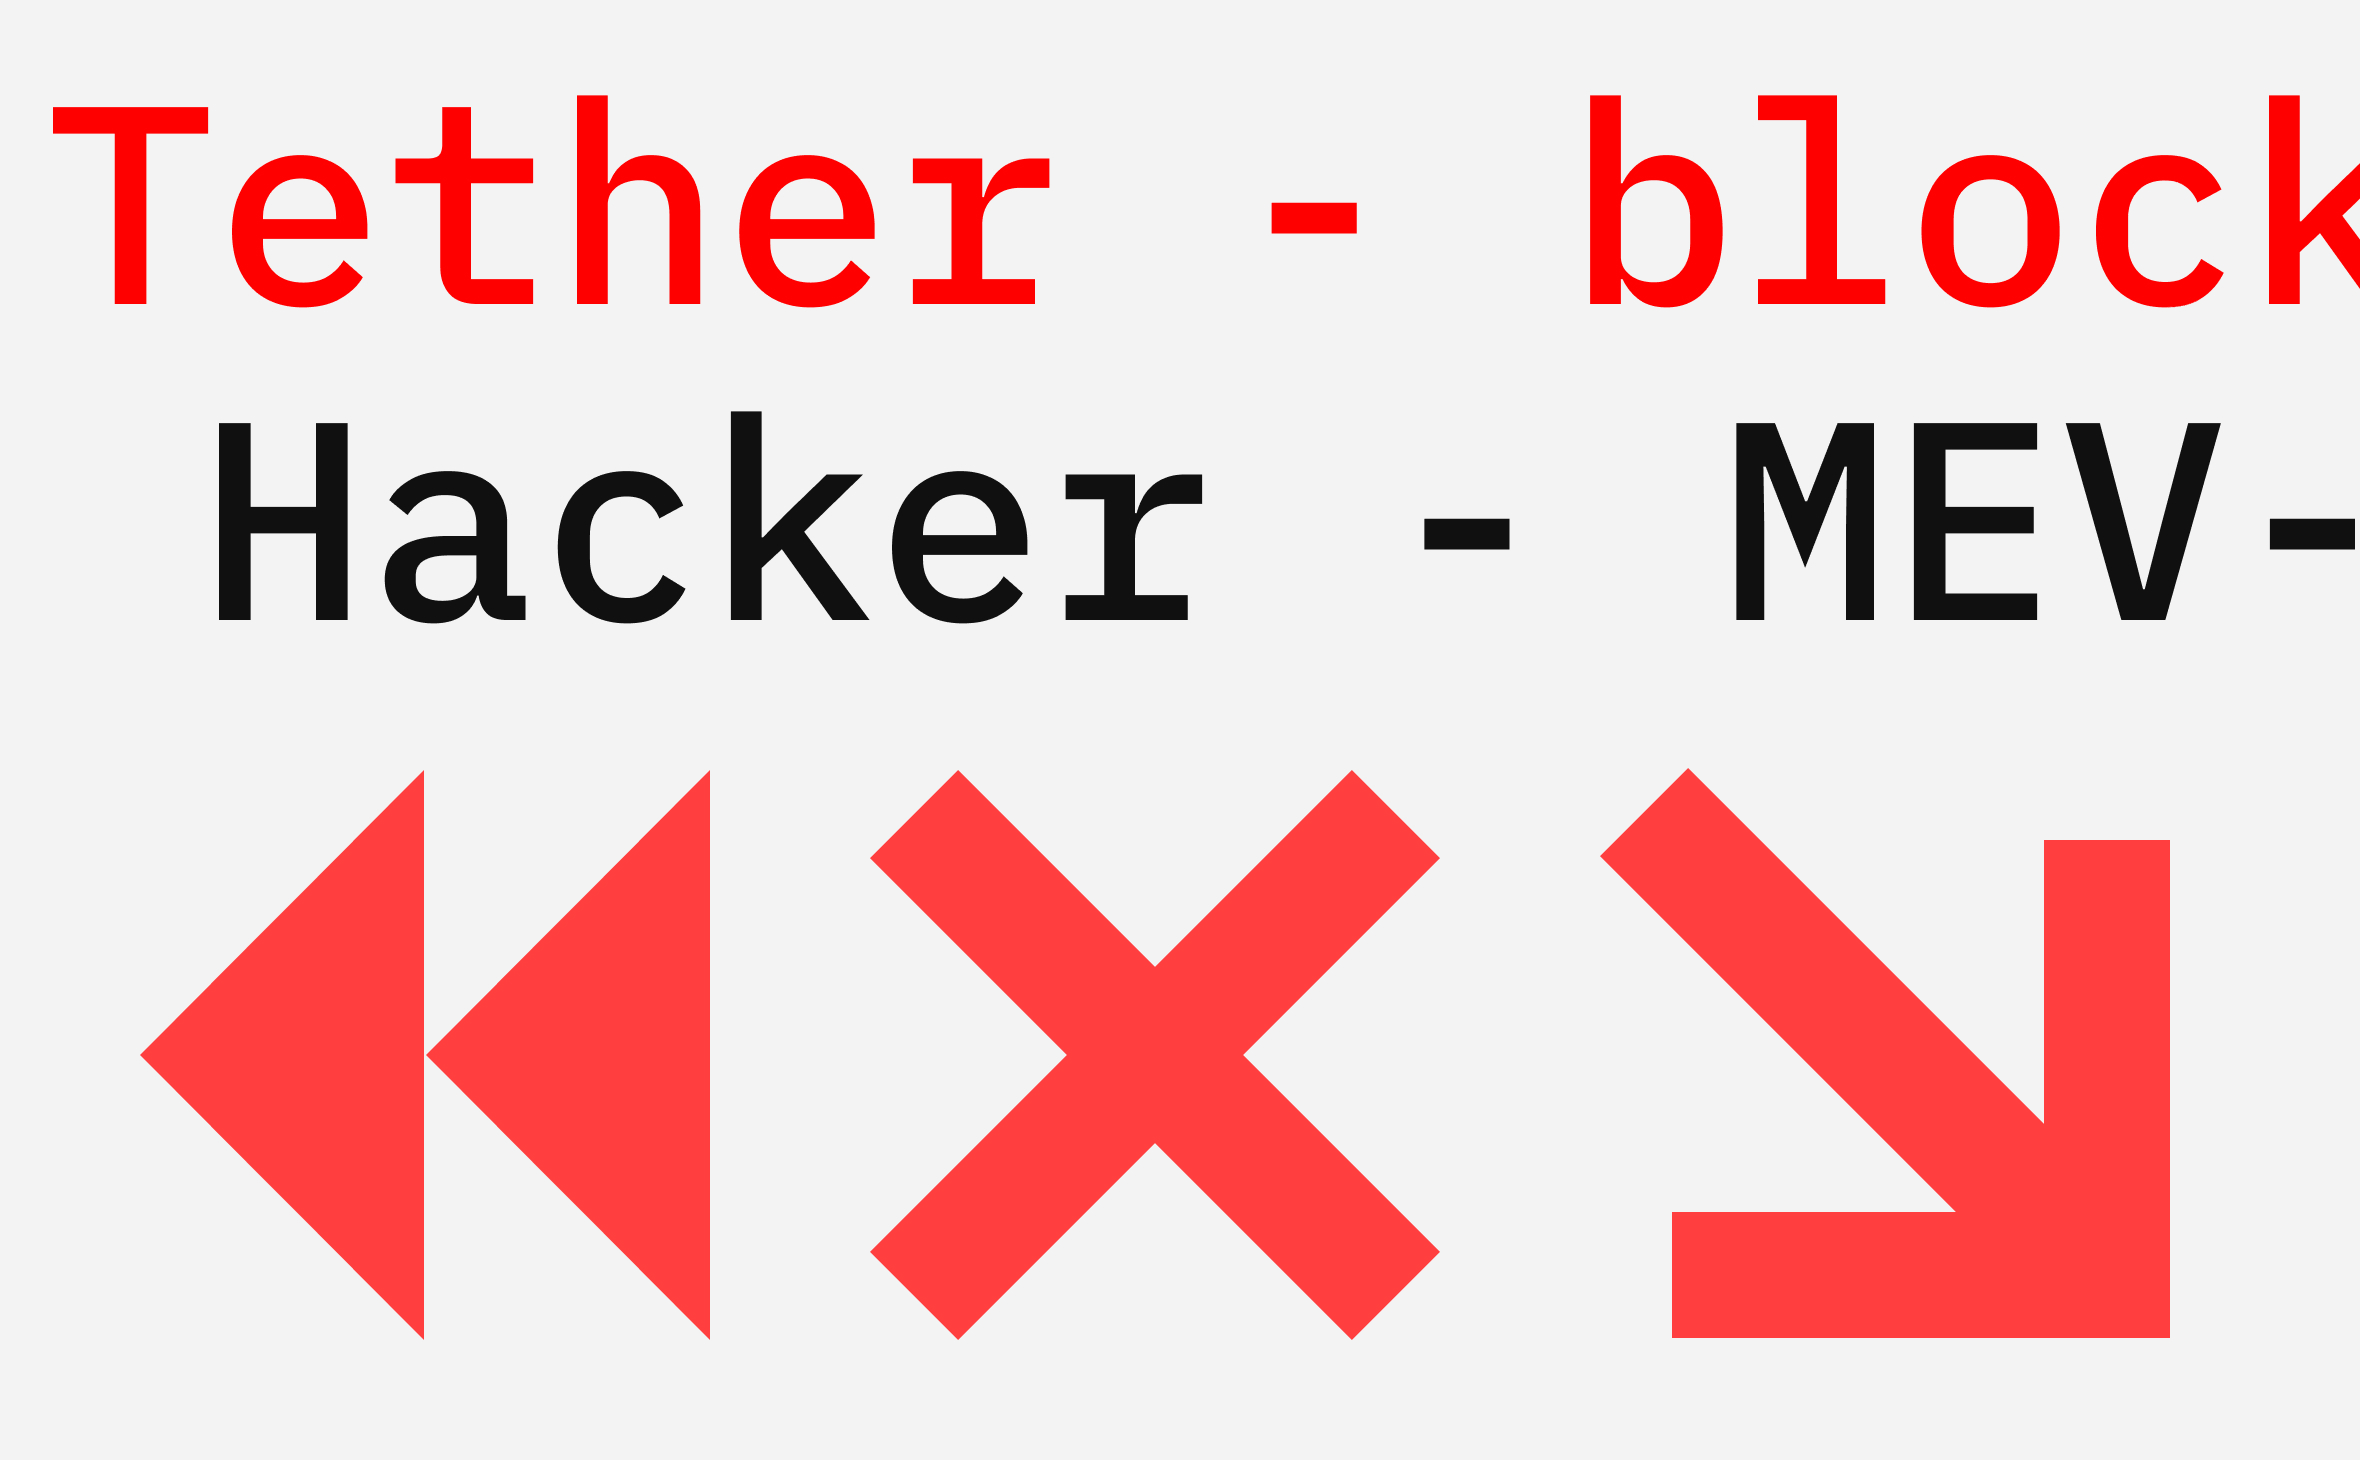 Tether внесла в черный список адрес укравшего неделю назад $25 млн хакера